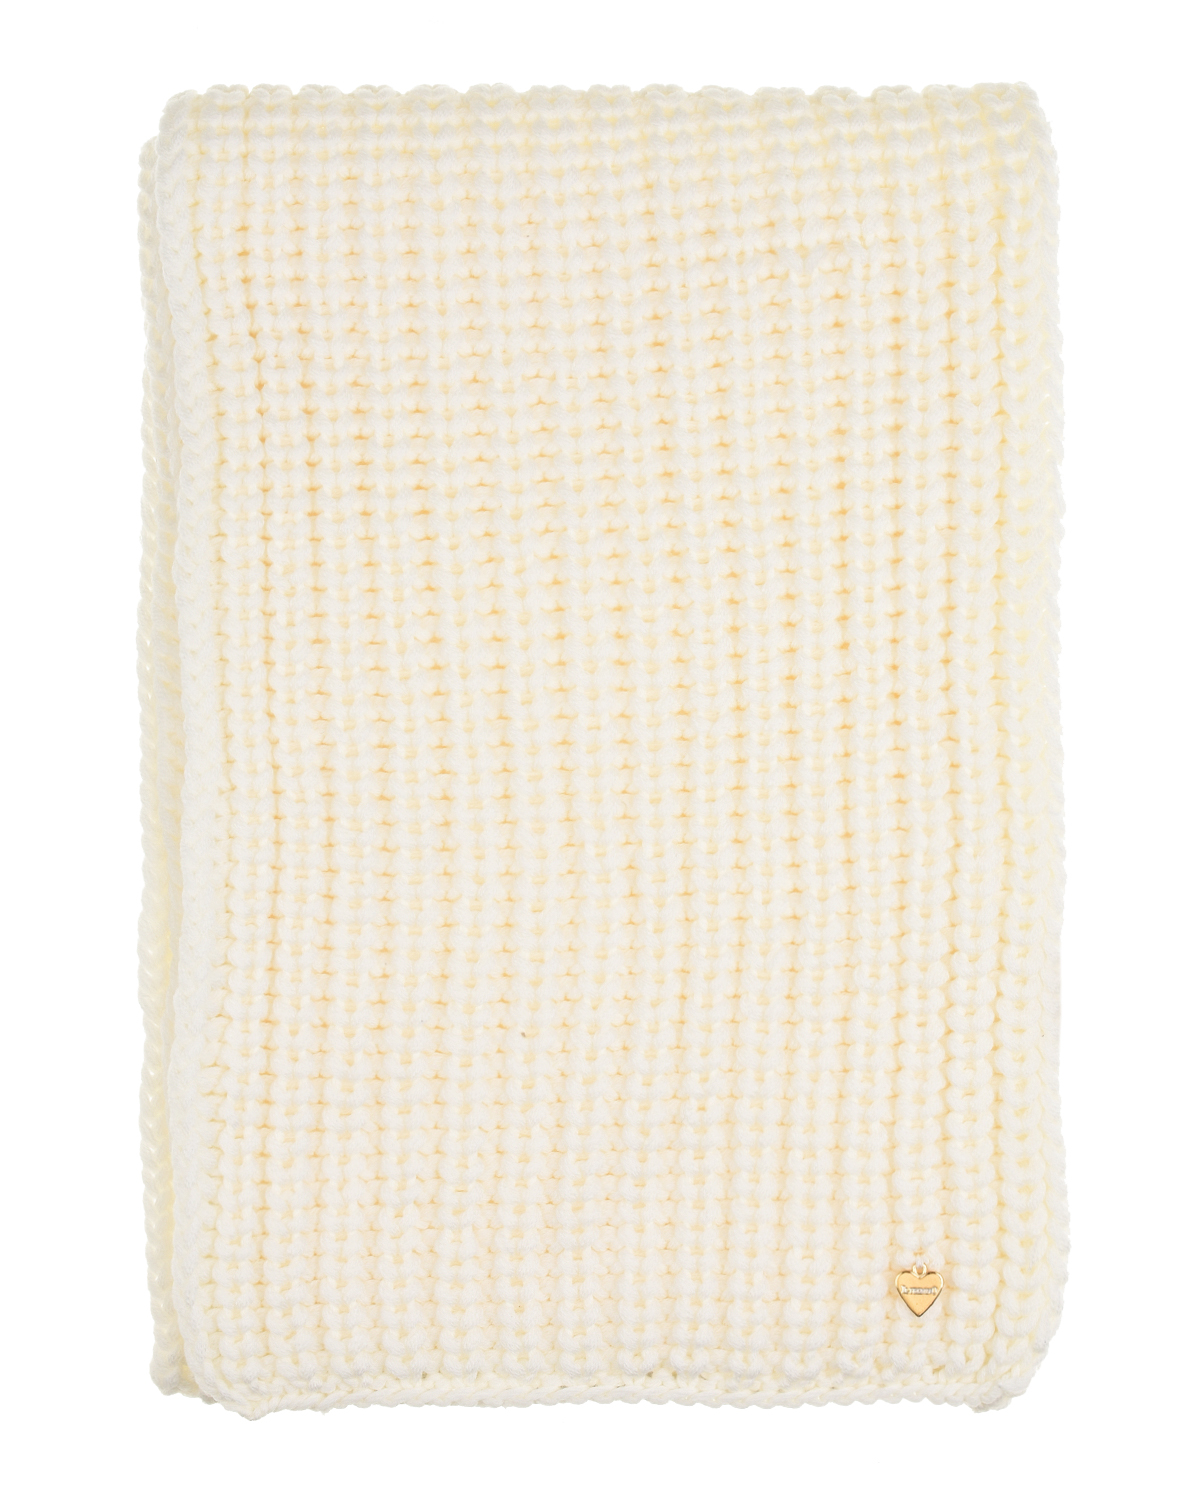 Кремовый шарф крупной вязки, 158x27 см Il Trenino детский, размер unica - фото 2